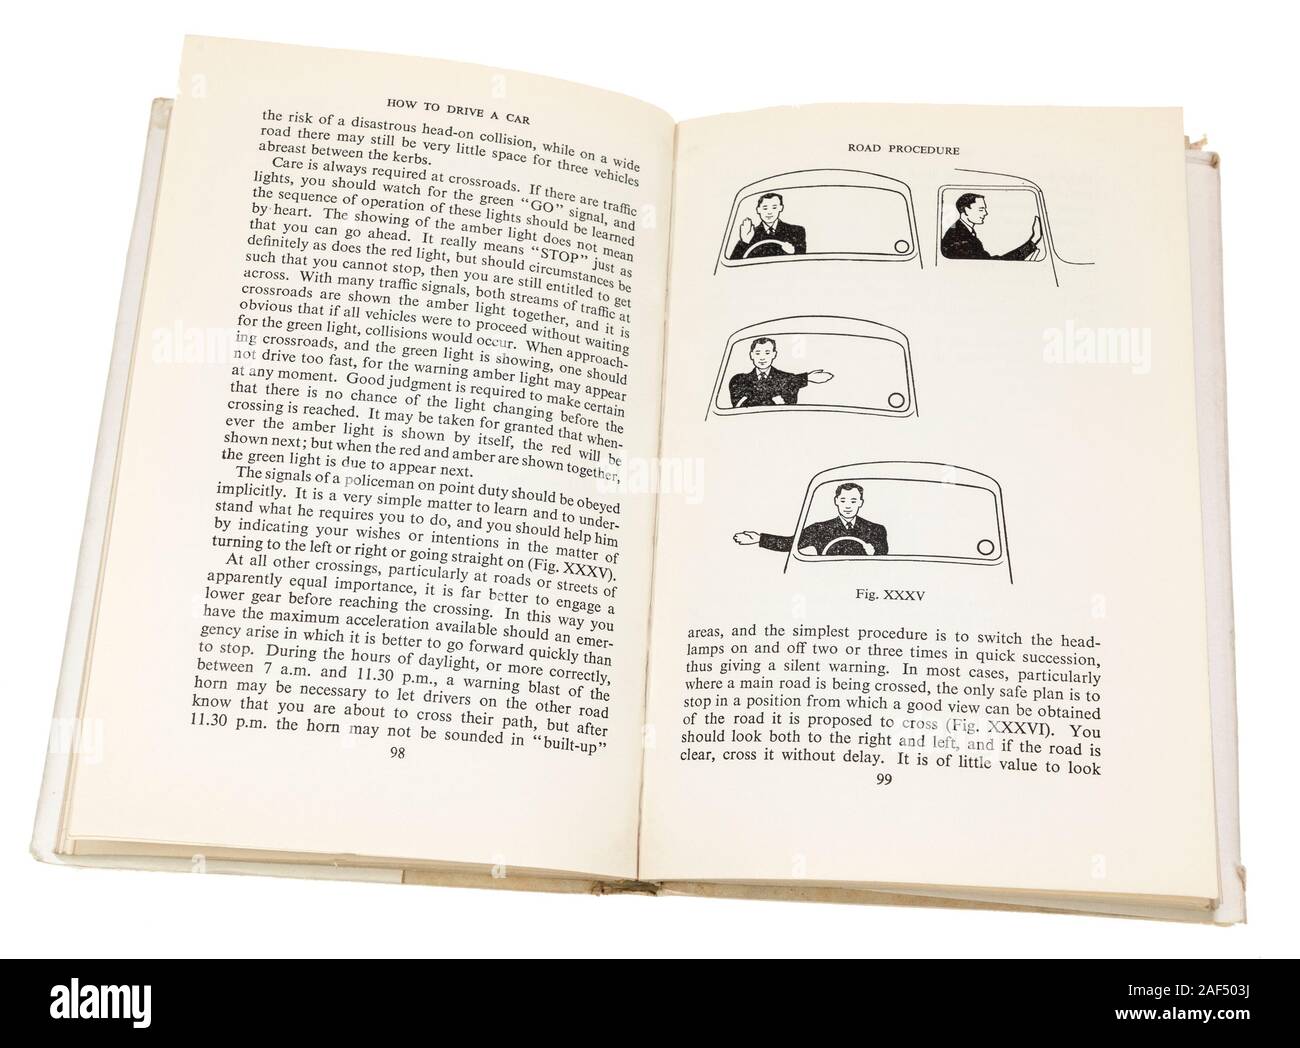 Señales de mano instrucciones en cómo conducir un coche libro de instrucciones por la Escuela Británica de Automovilismo, 1950 Foto de stock